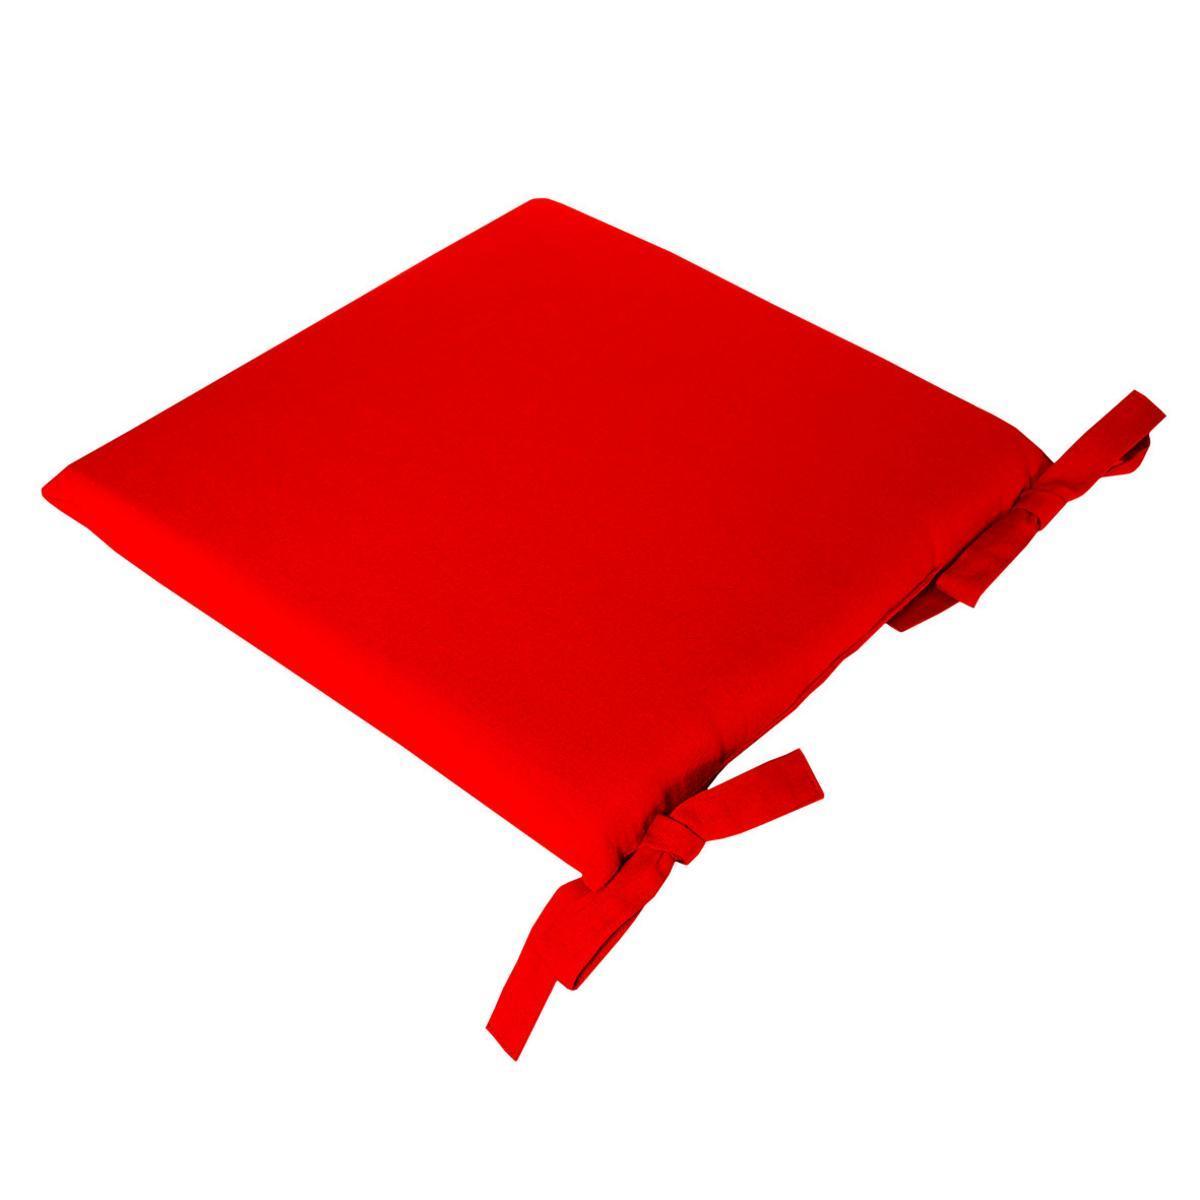 Galette de chaise à nouettes - Coton et mousse - 38 x 38 x H 4,5 cm - Rouge